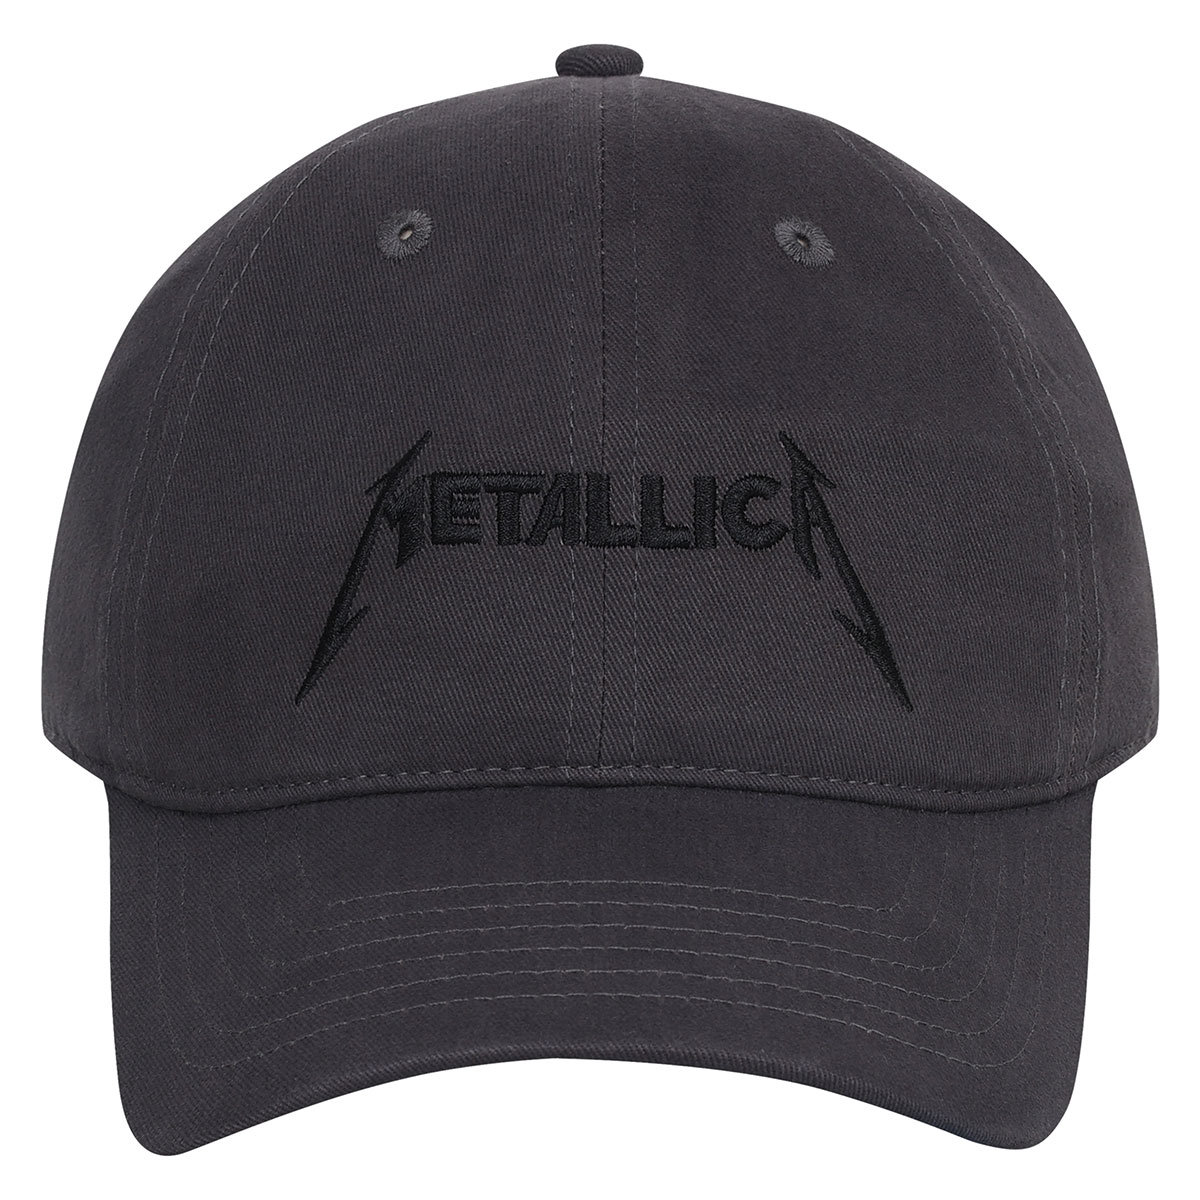 Metallica Dad Cap